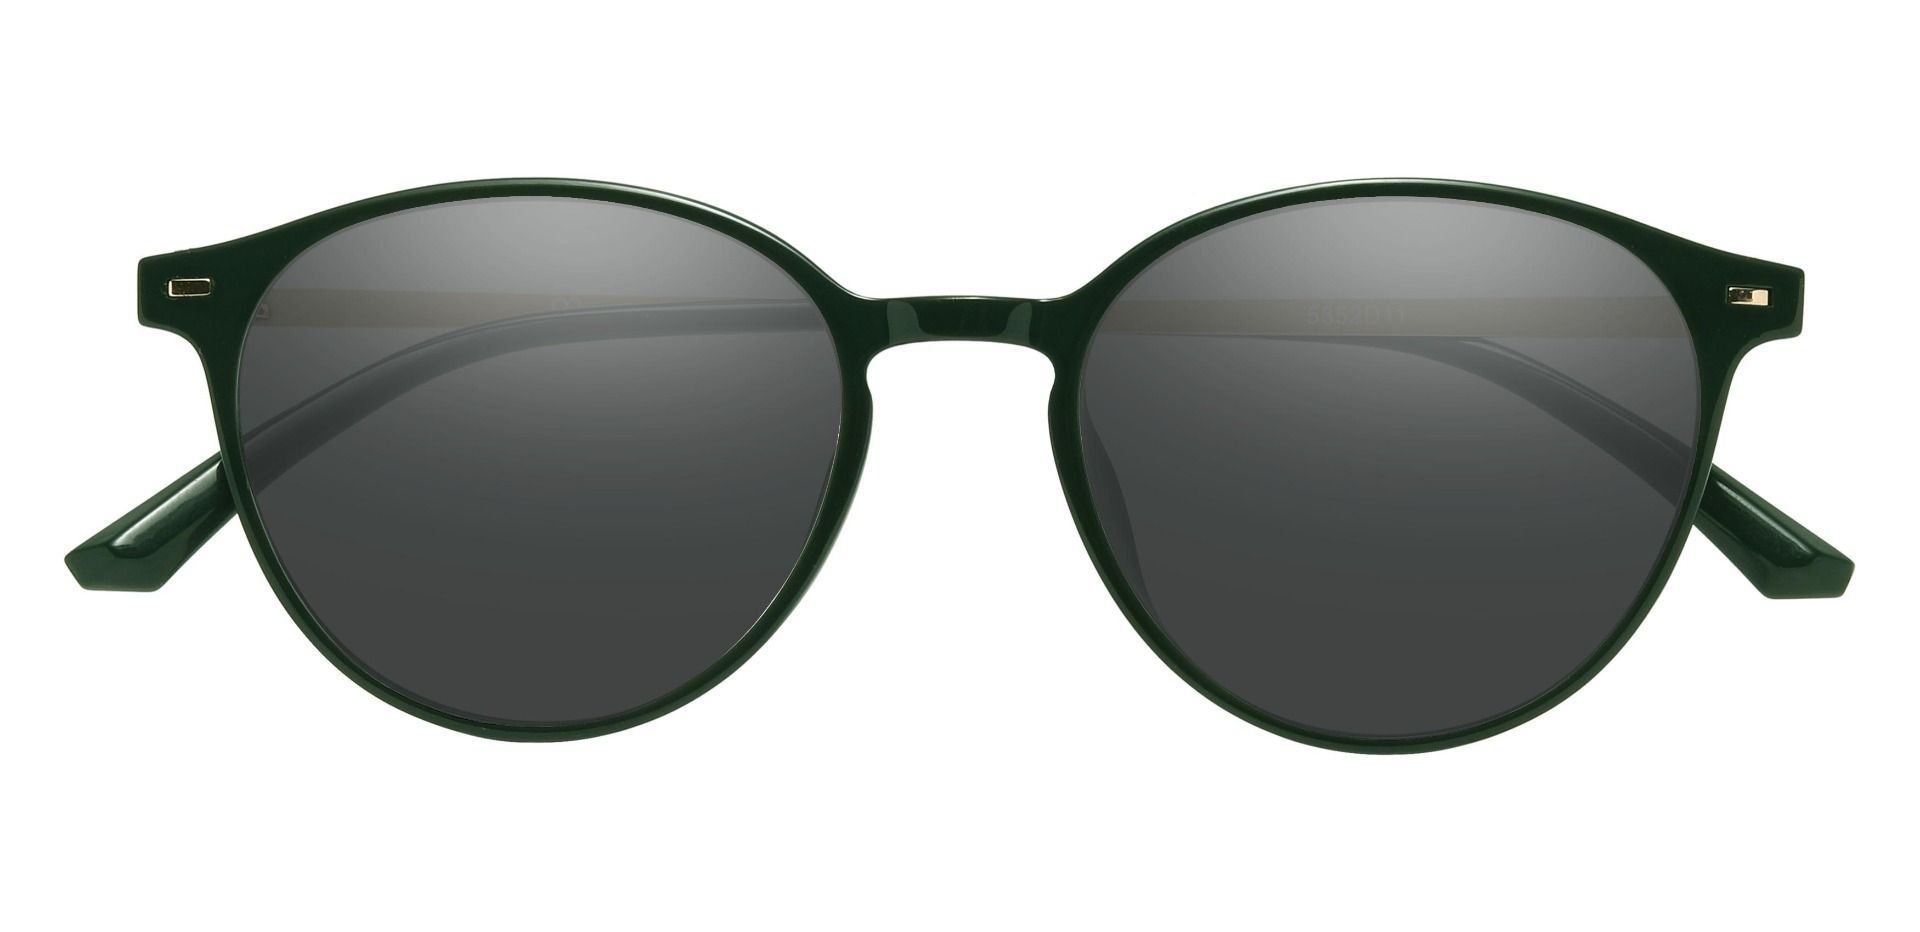 Springer Round Progressive Sunglasses - Green Frame With Gray Lenses